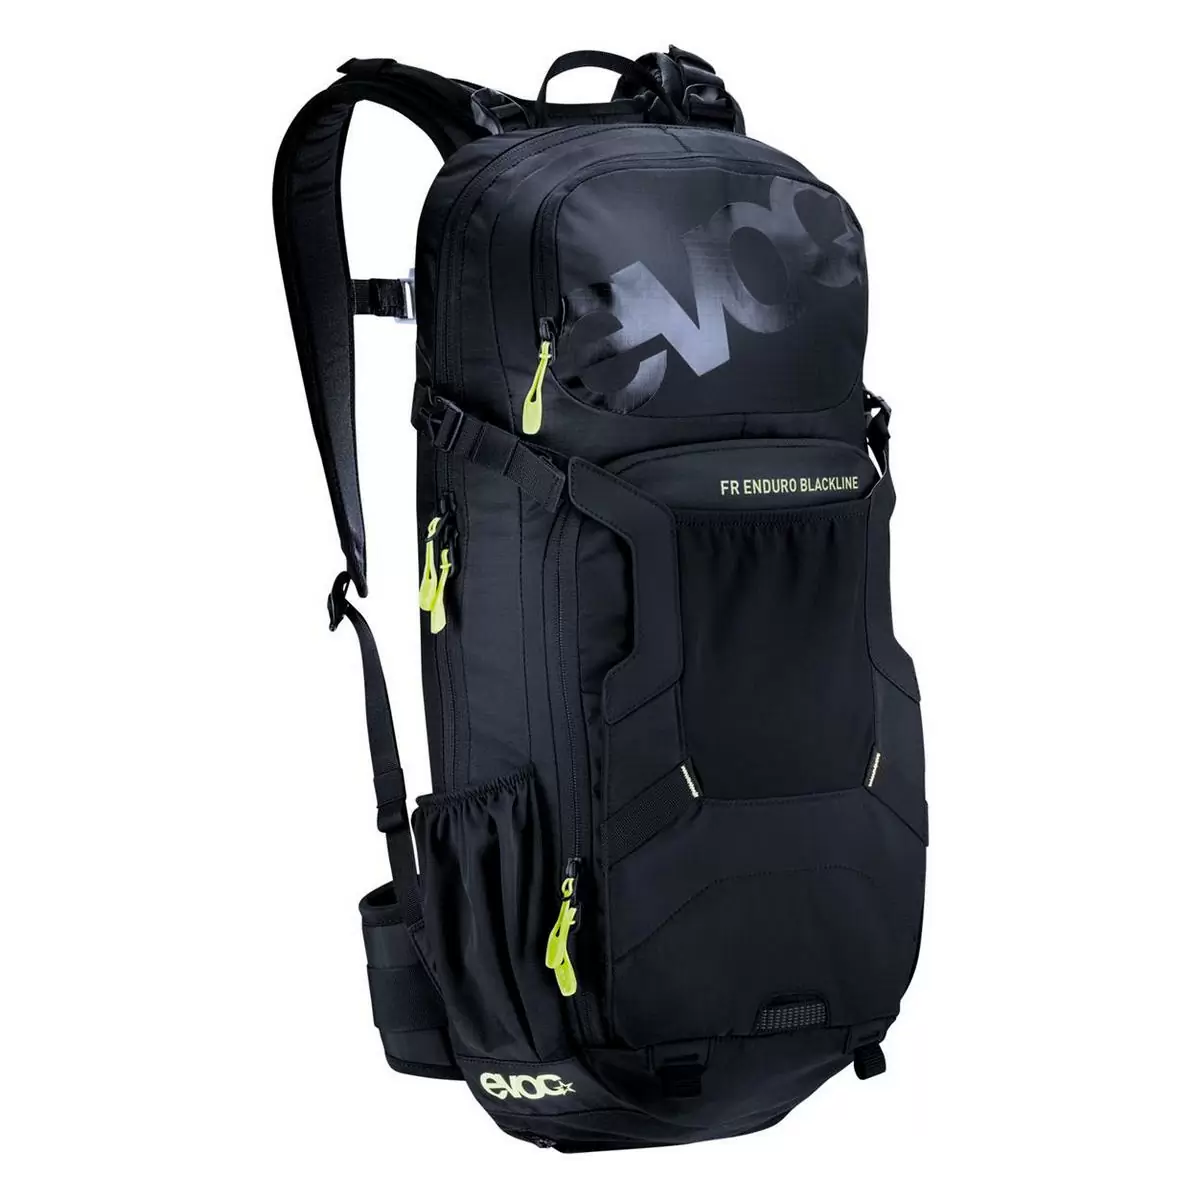 FR enduro blackline backpack 18lt with back protector size XL - image